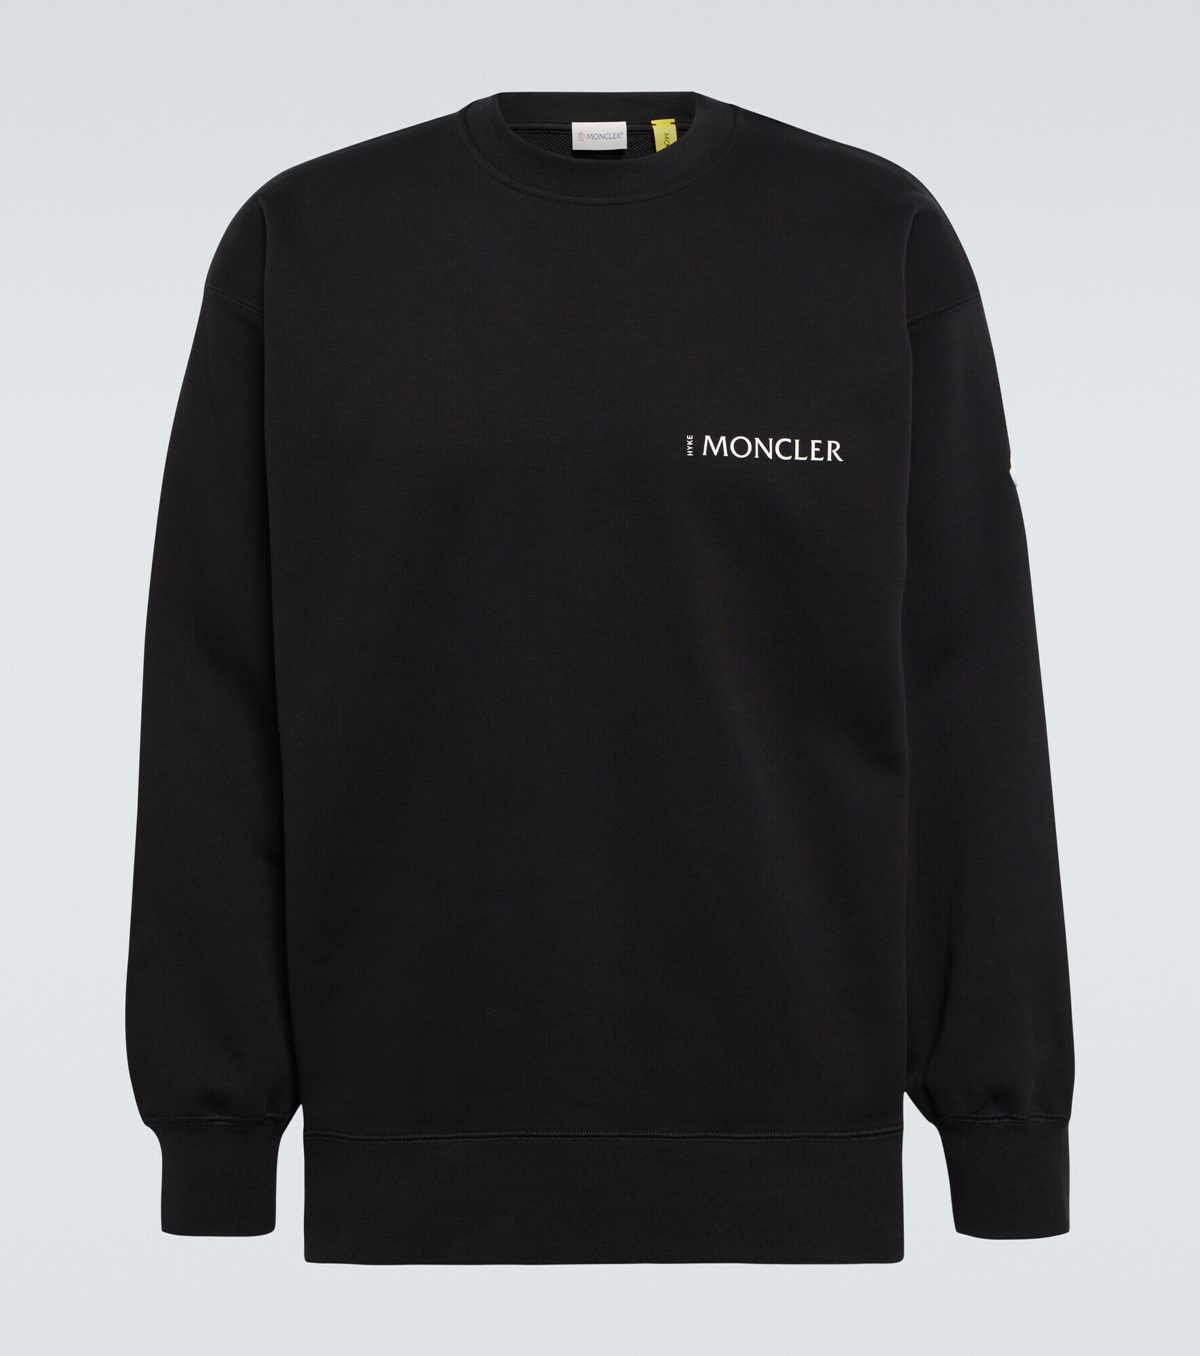 Moncler Genius - 4 Moncler Hyke cotton-blend sweatshirt Moncler Genius